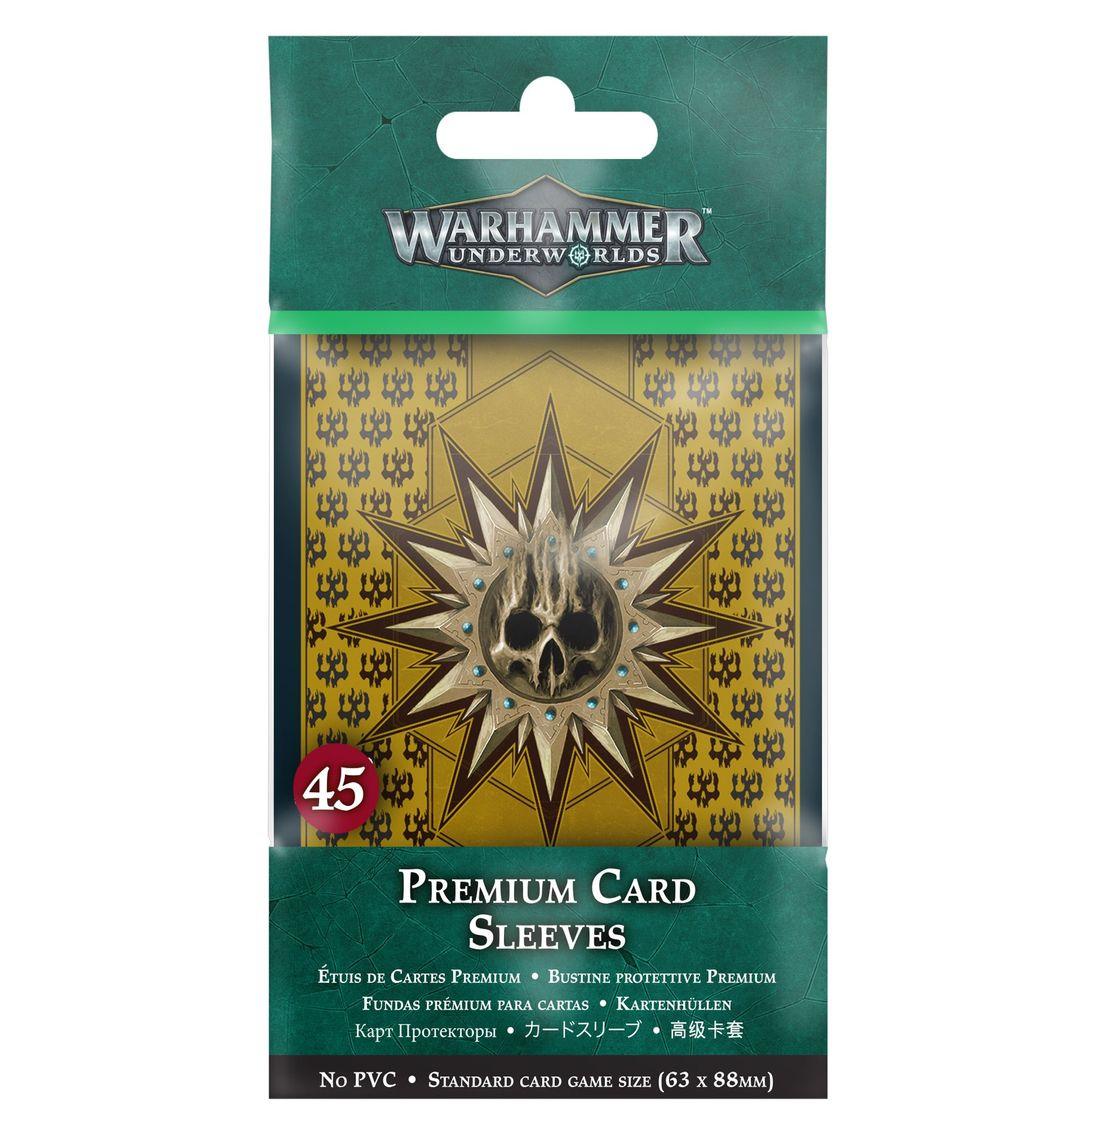 Warhammer Underworld: Premium Card Sleeves